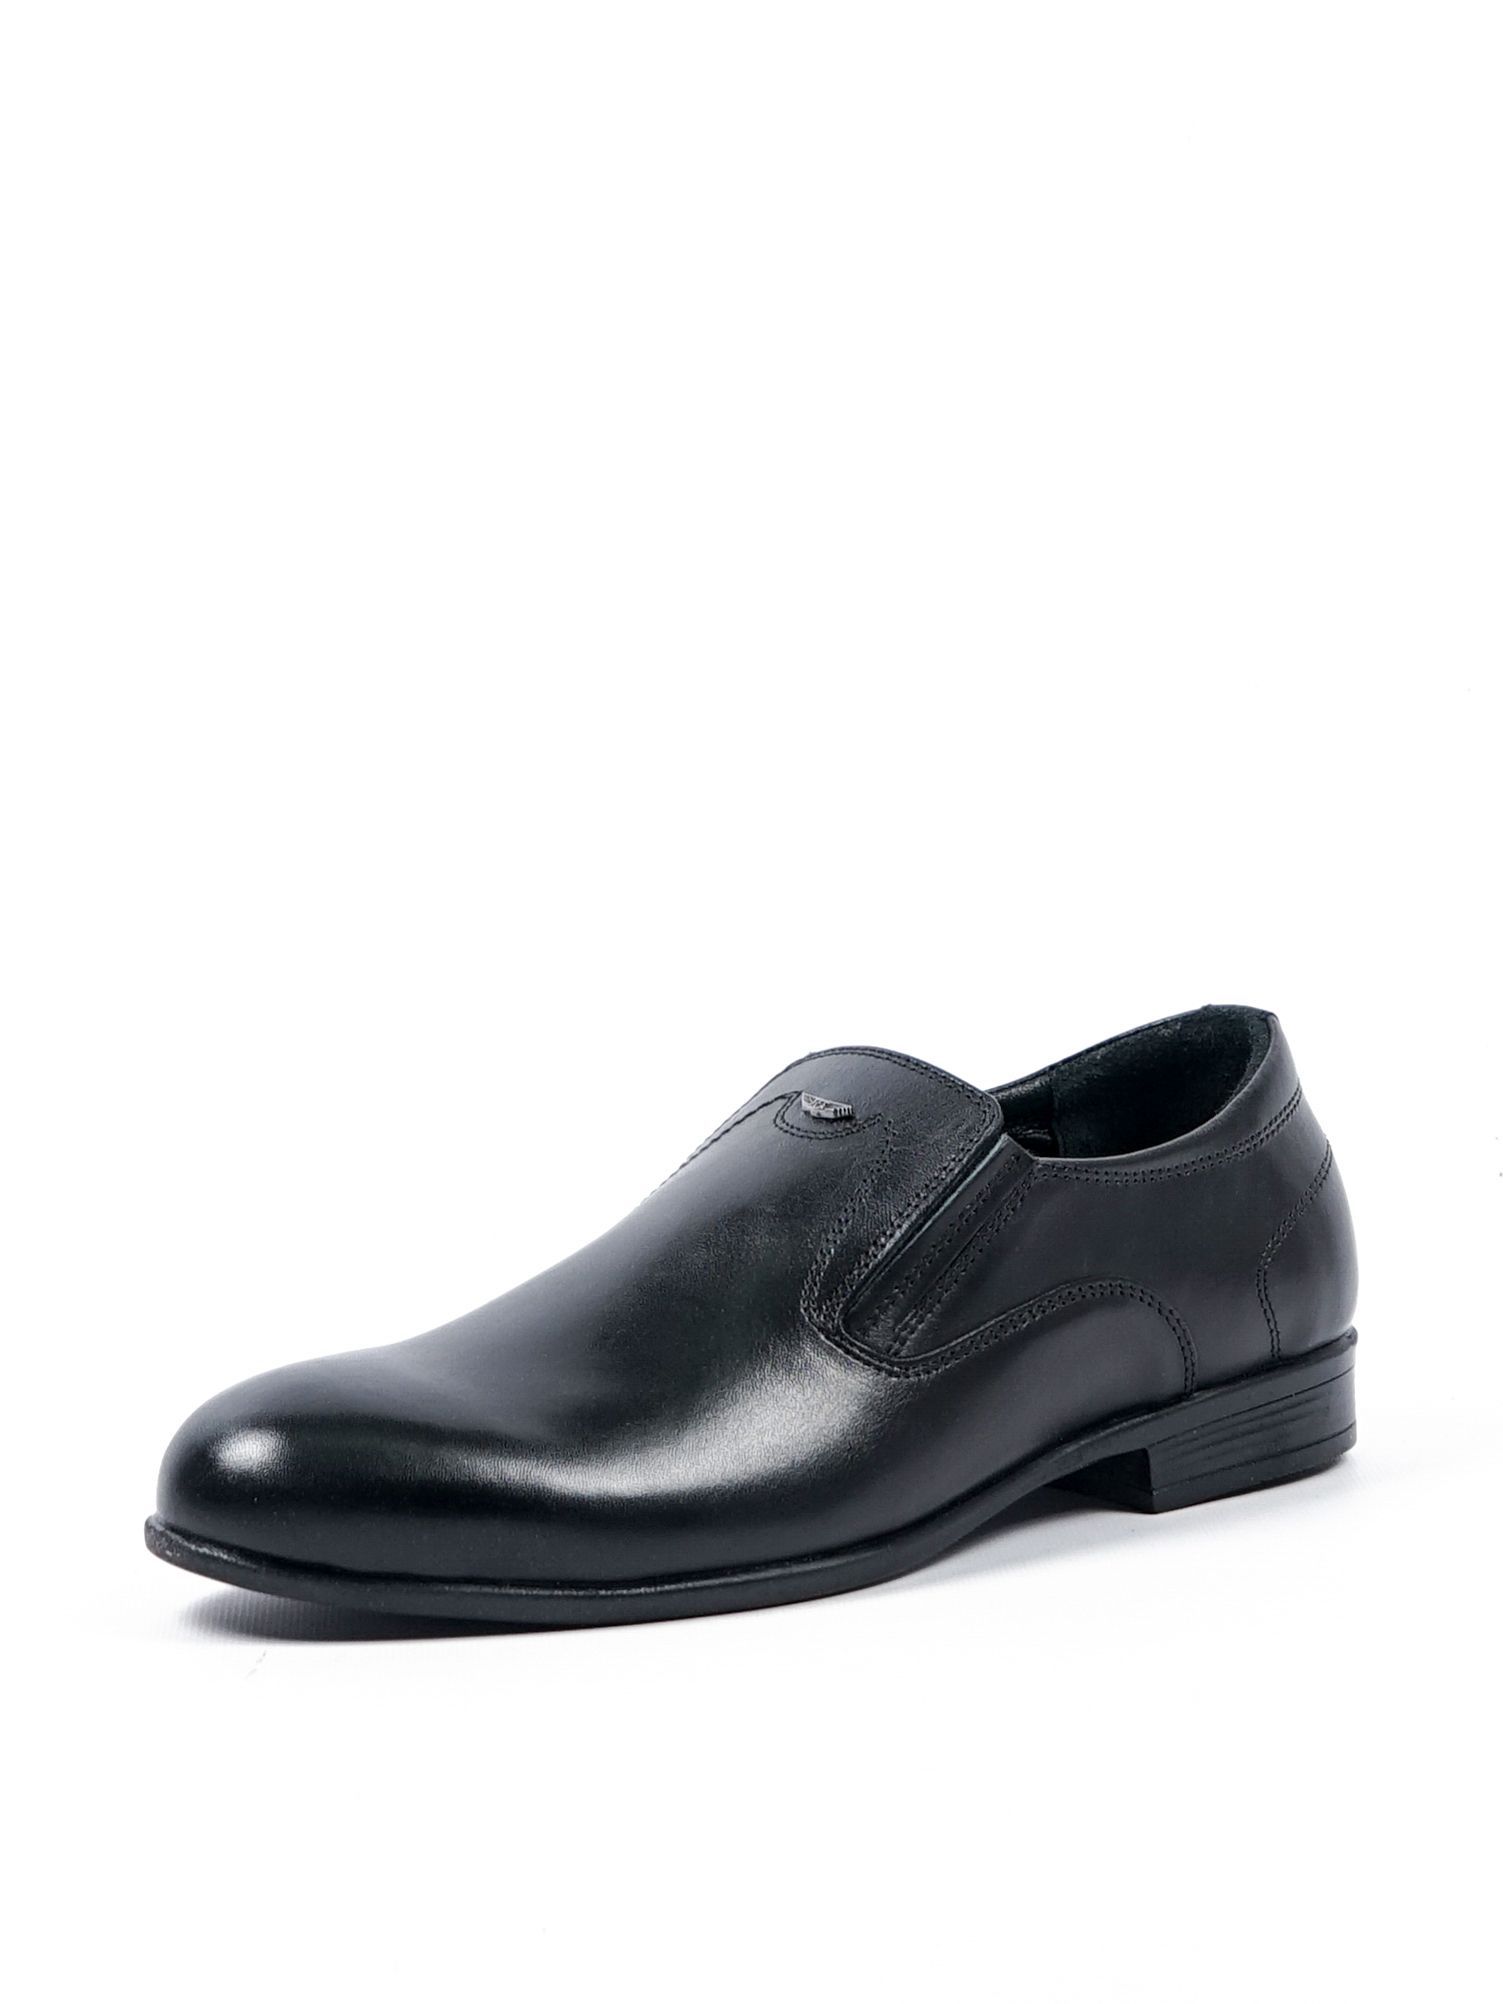 Туфли мужские Comfort Shoes 1098/1 черные 44 RU